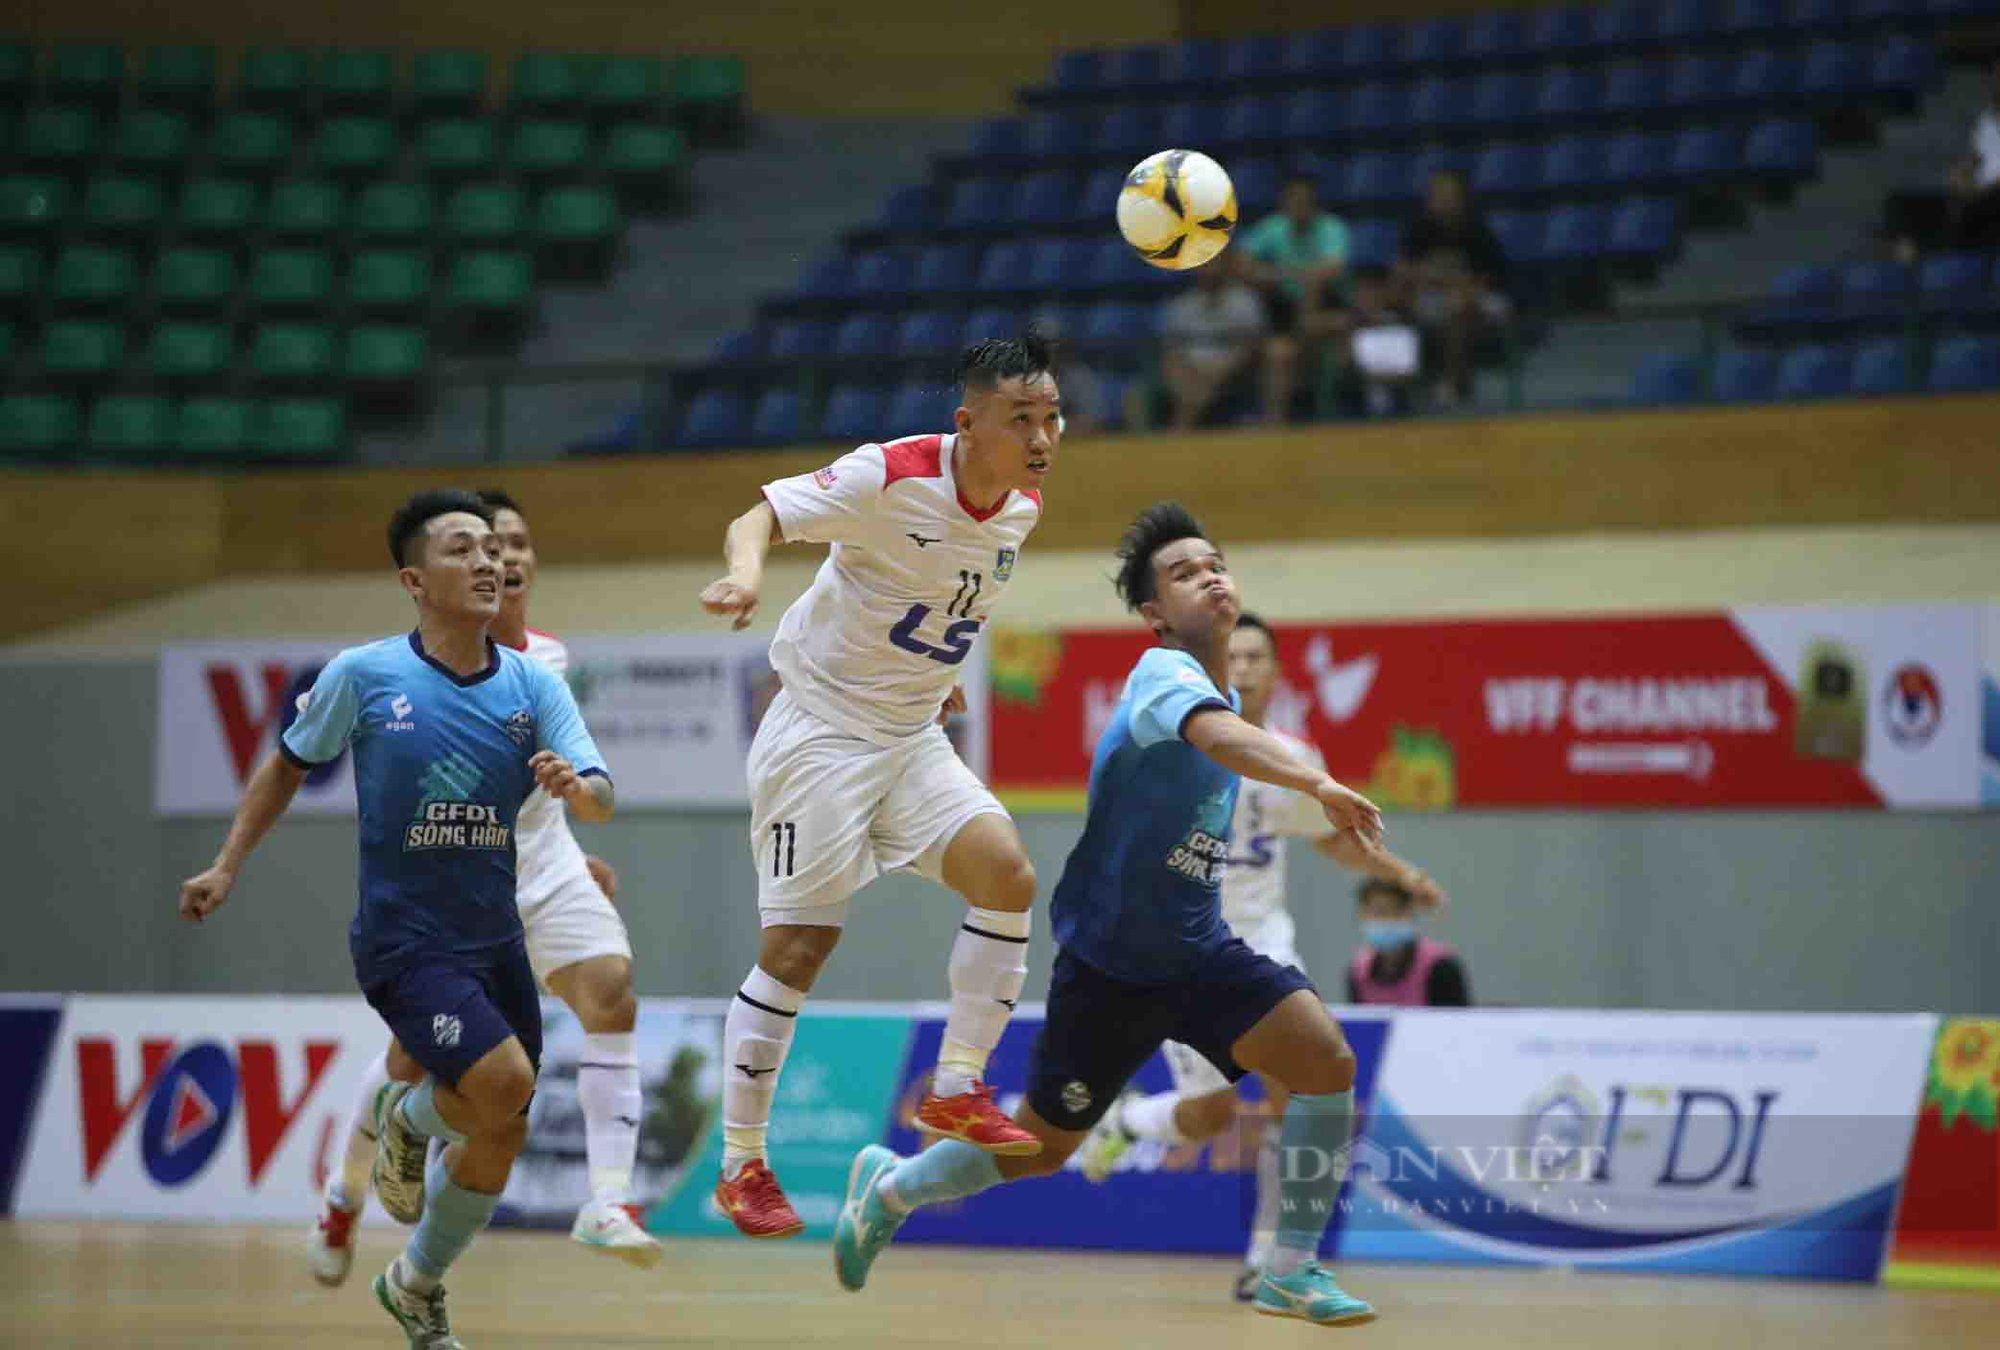 Thắng đậm GFDI Sông Hàn, Thái Sơn Nam vô địch lượt đi giải futsal HDBank VĐQG 2023 - Ảnh 1.